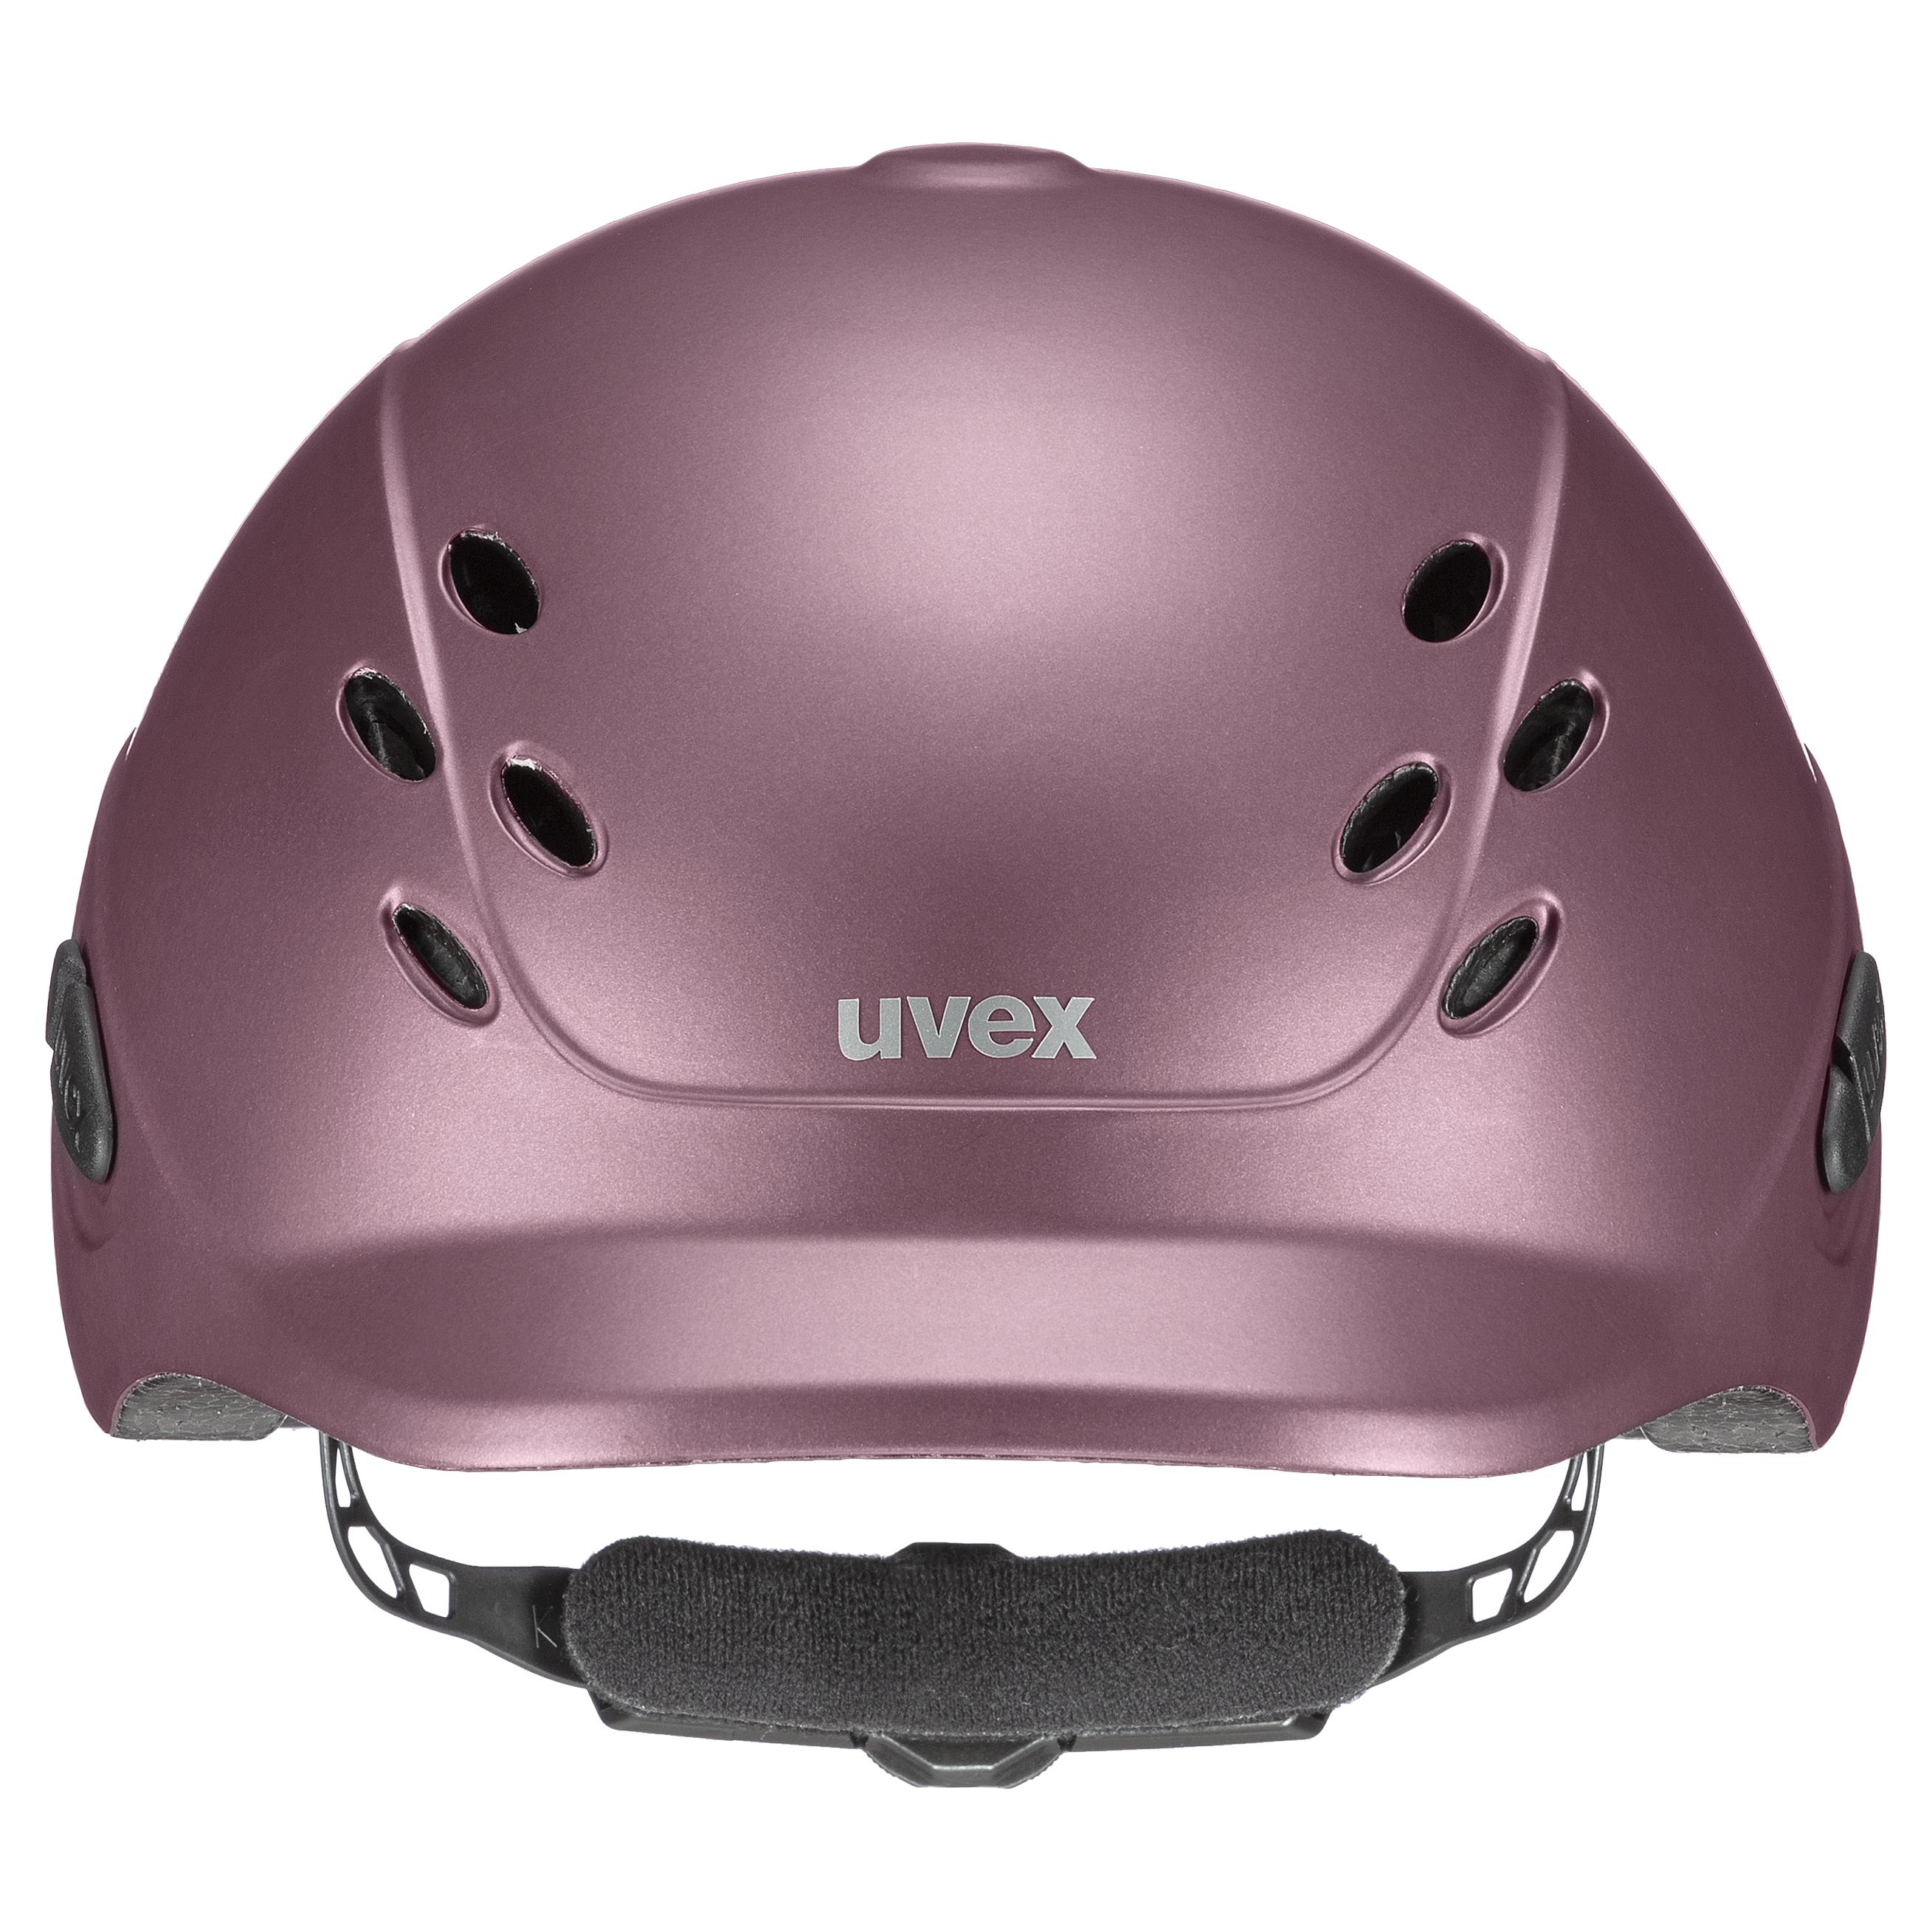 Uvex Bonnet d'équitation réglable pour enfant taille 49-54 cm onyxx uni rubis mat (NOUVEAU)